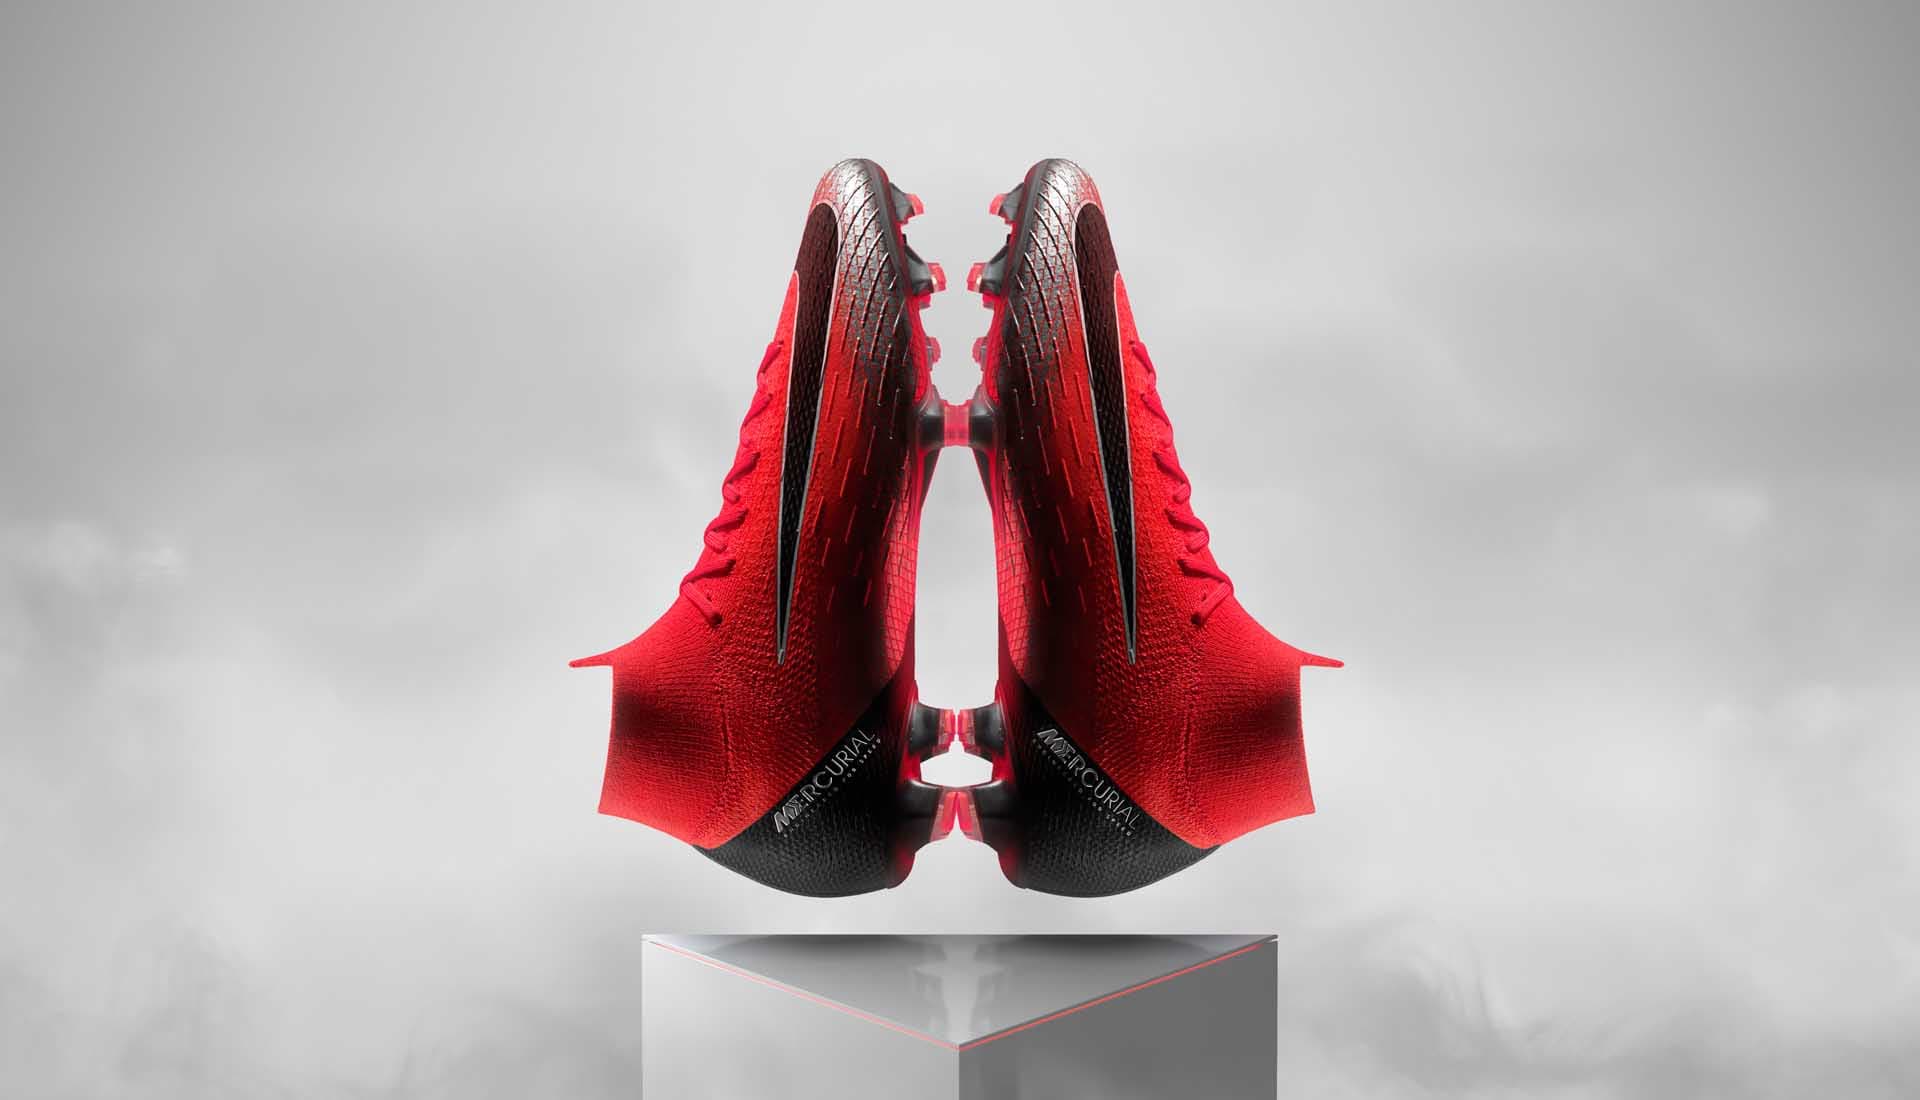 Giày Nike Mercurial CR7 Chapter 7 cực kỳ đẹp mắt với phối màu đỏ đen bạc